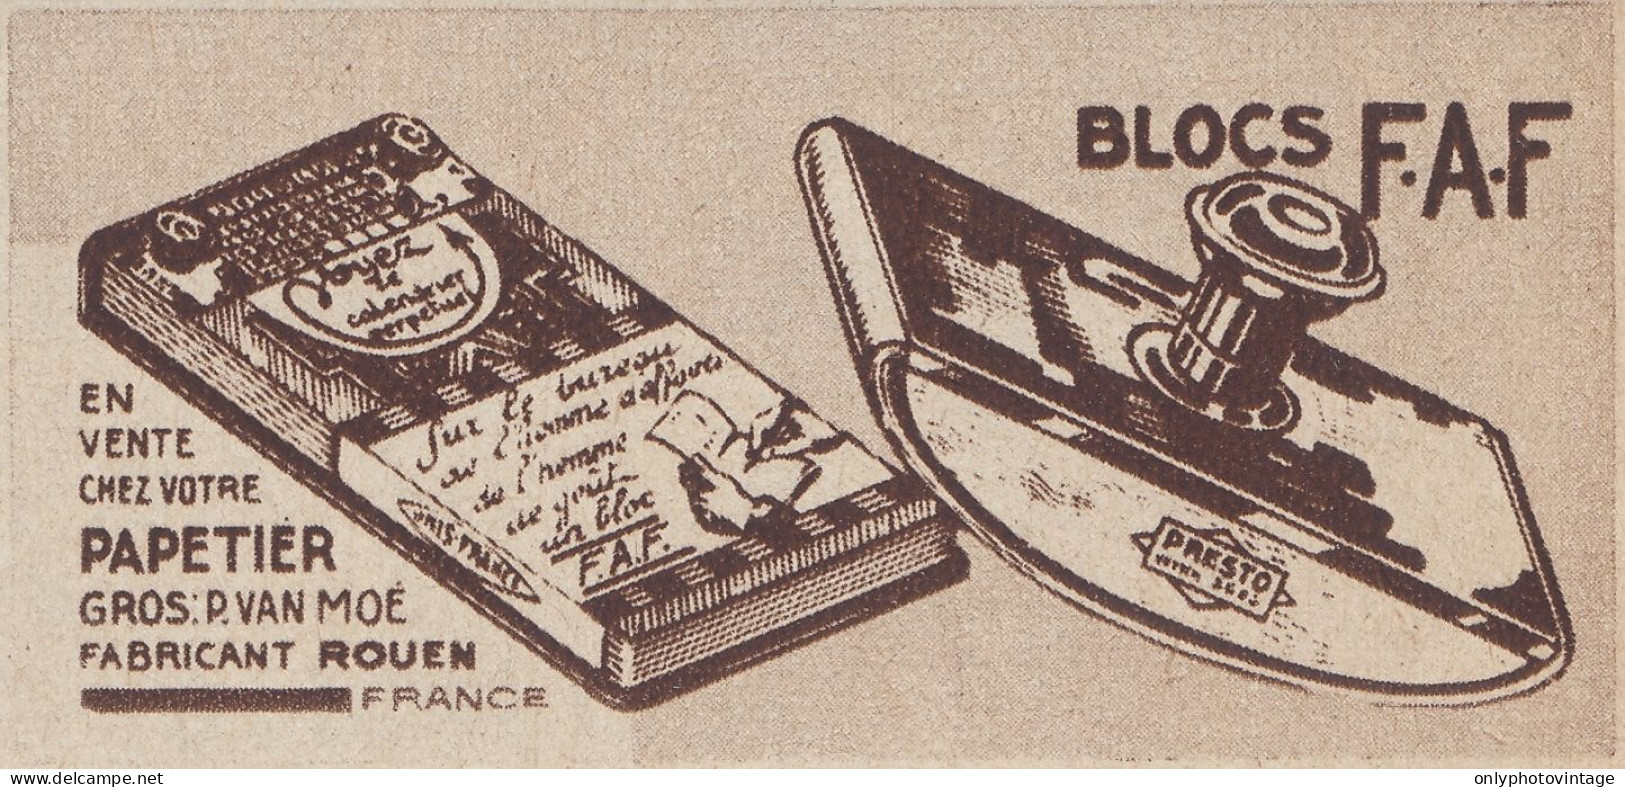 Papetier - Blocs F.A.F. - 1938 Vintage Advertising - Pubblicit� Epoca - Werbung